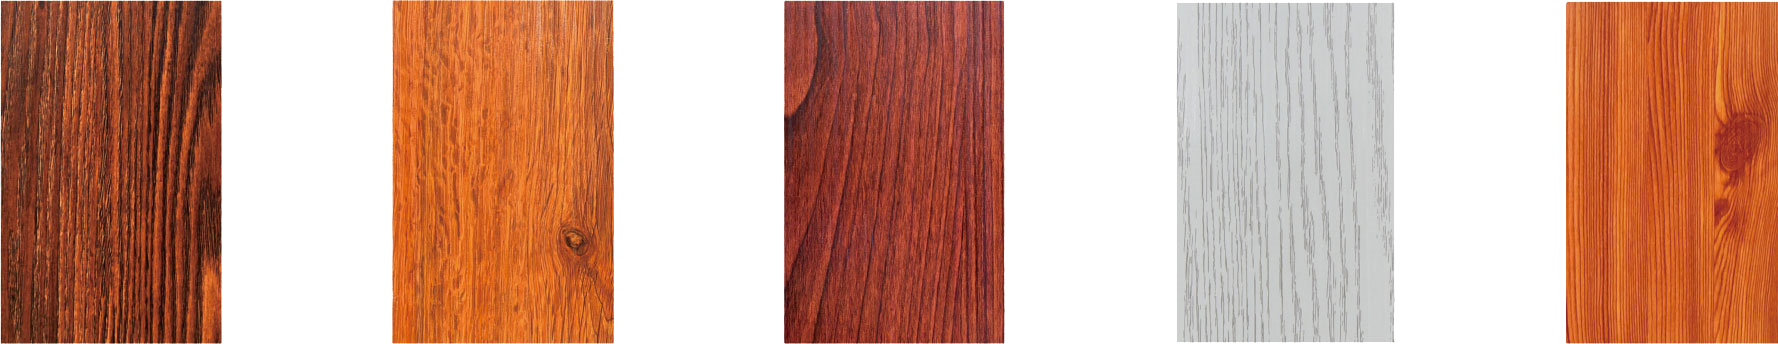 Flakeboard wood grain series (indoor)